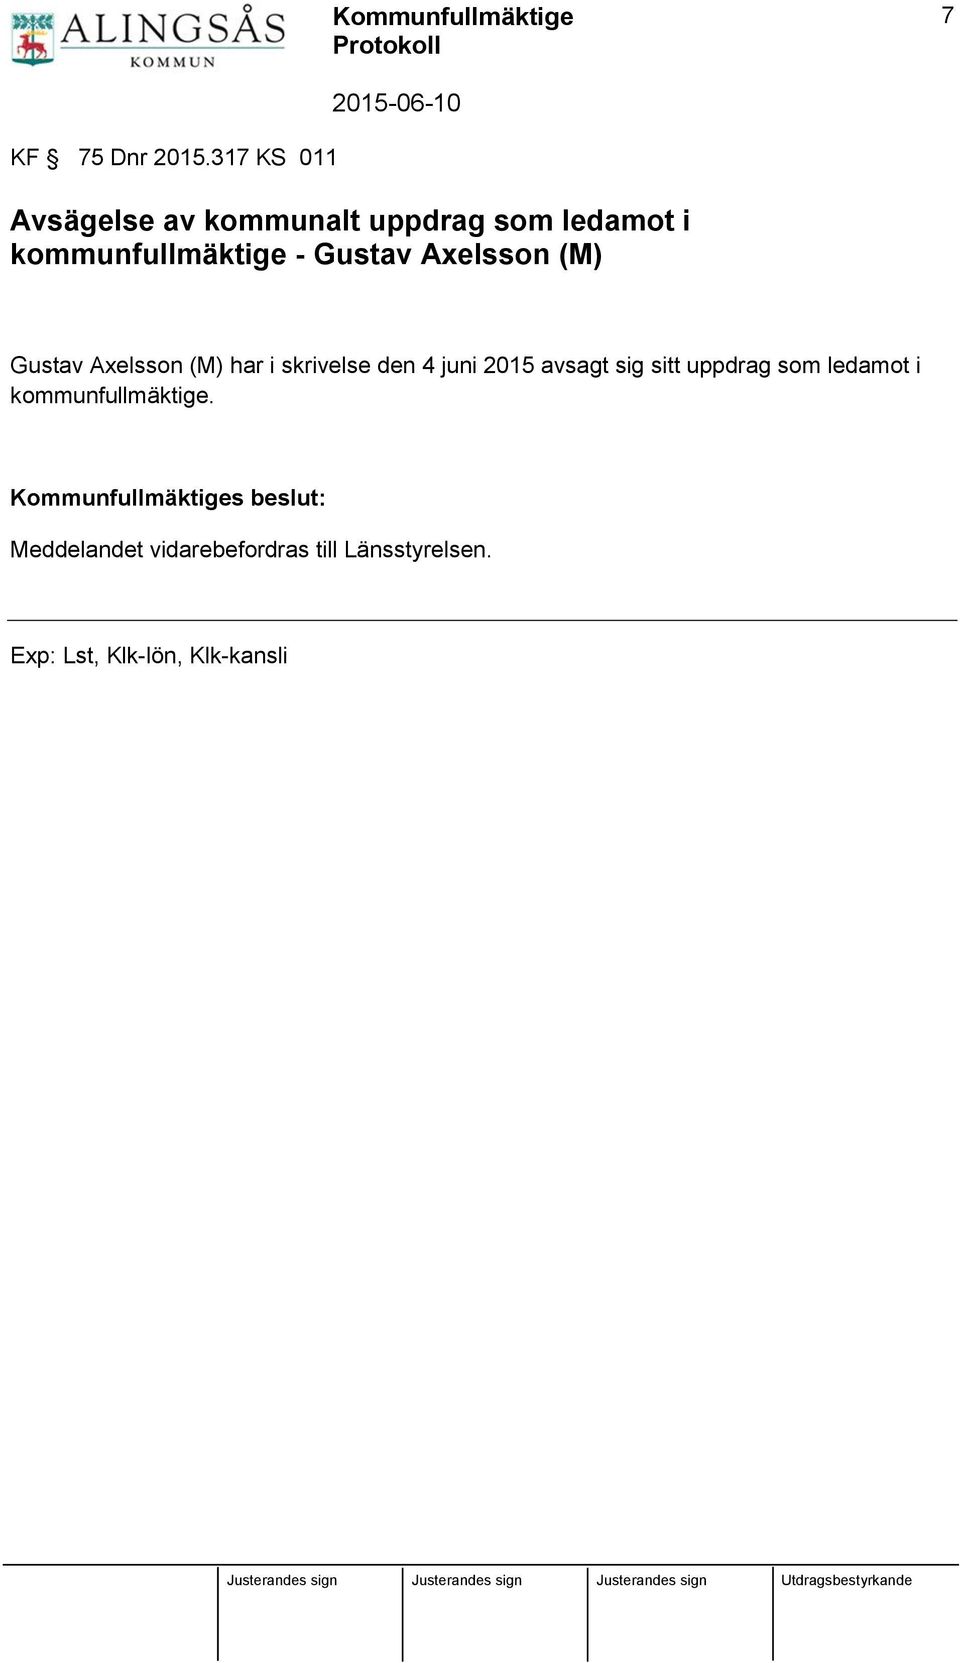 Gustav Axelsson (M) Gustav Axelsson (M) har i skrivelse den 4 juni 2015 avsagt